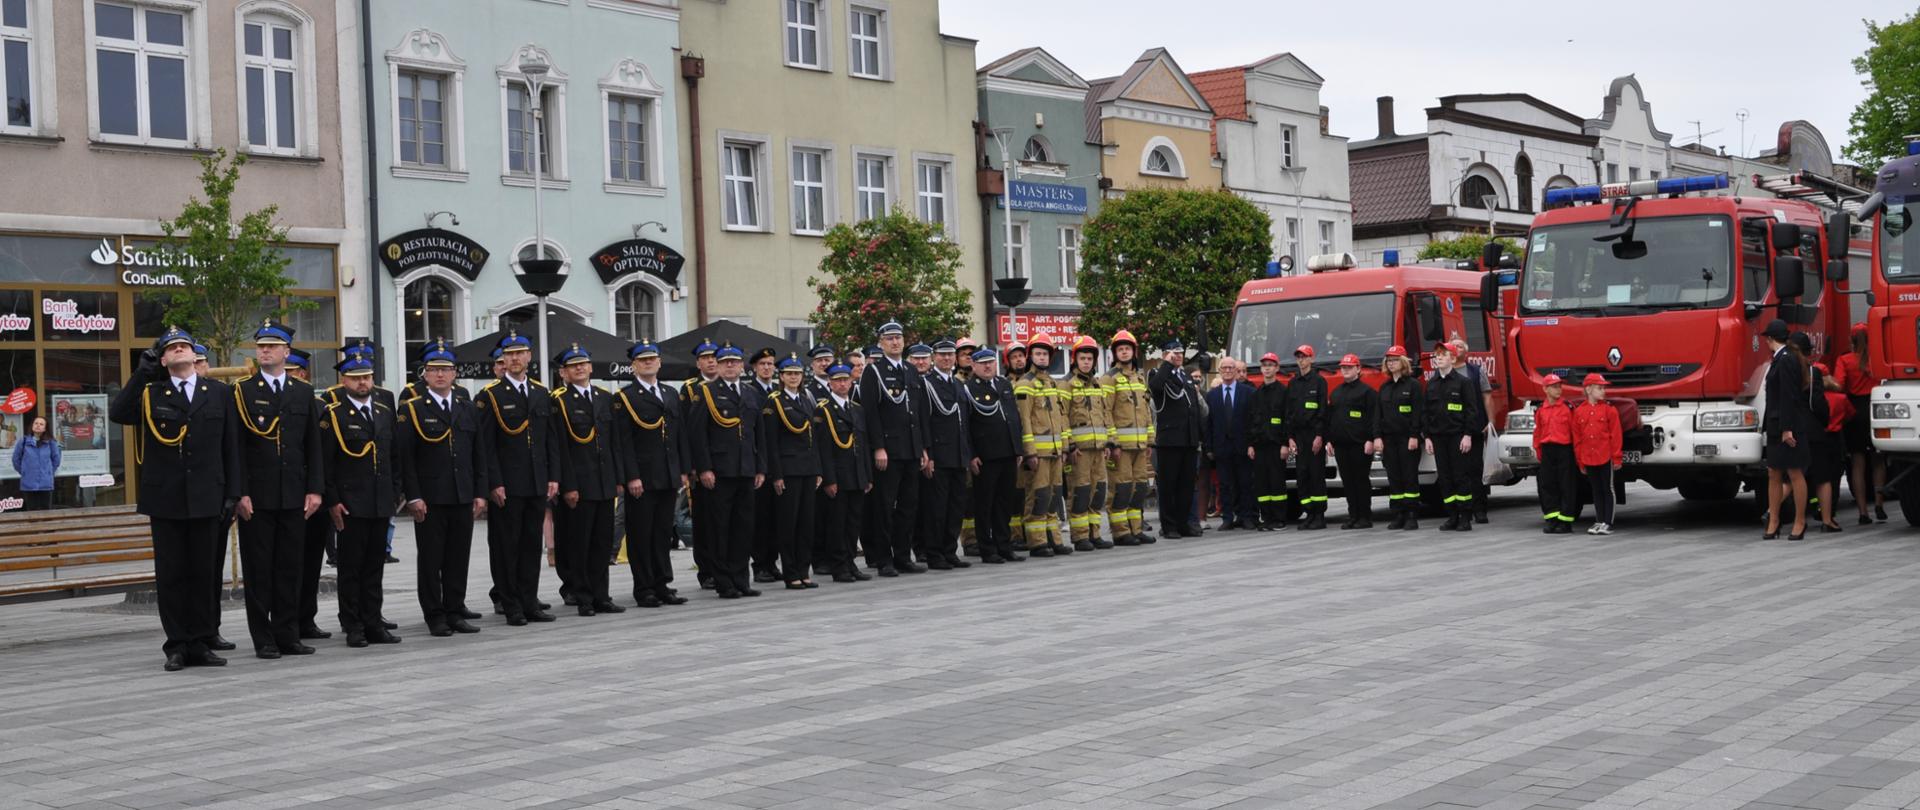 Zdjęcie przedstawia strażaków ubranych w mundury wyjściowe oraz mundury specjalne. Strażacy stoją na Starym Rynku w Pucku. Ratownicy stoją ustawieni w dwuszeregu na tle budynków oraz samochodów strażackich.